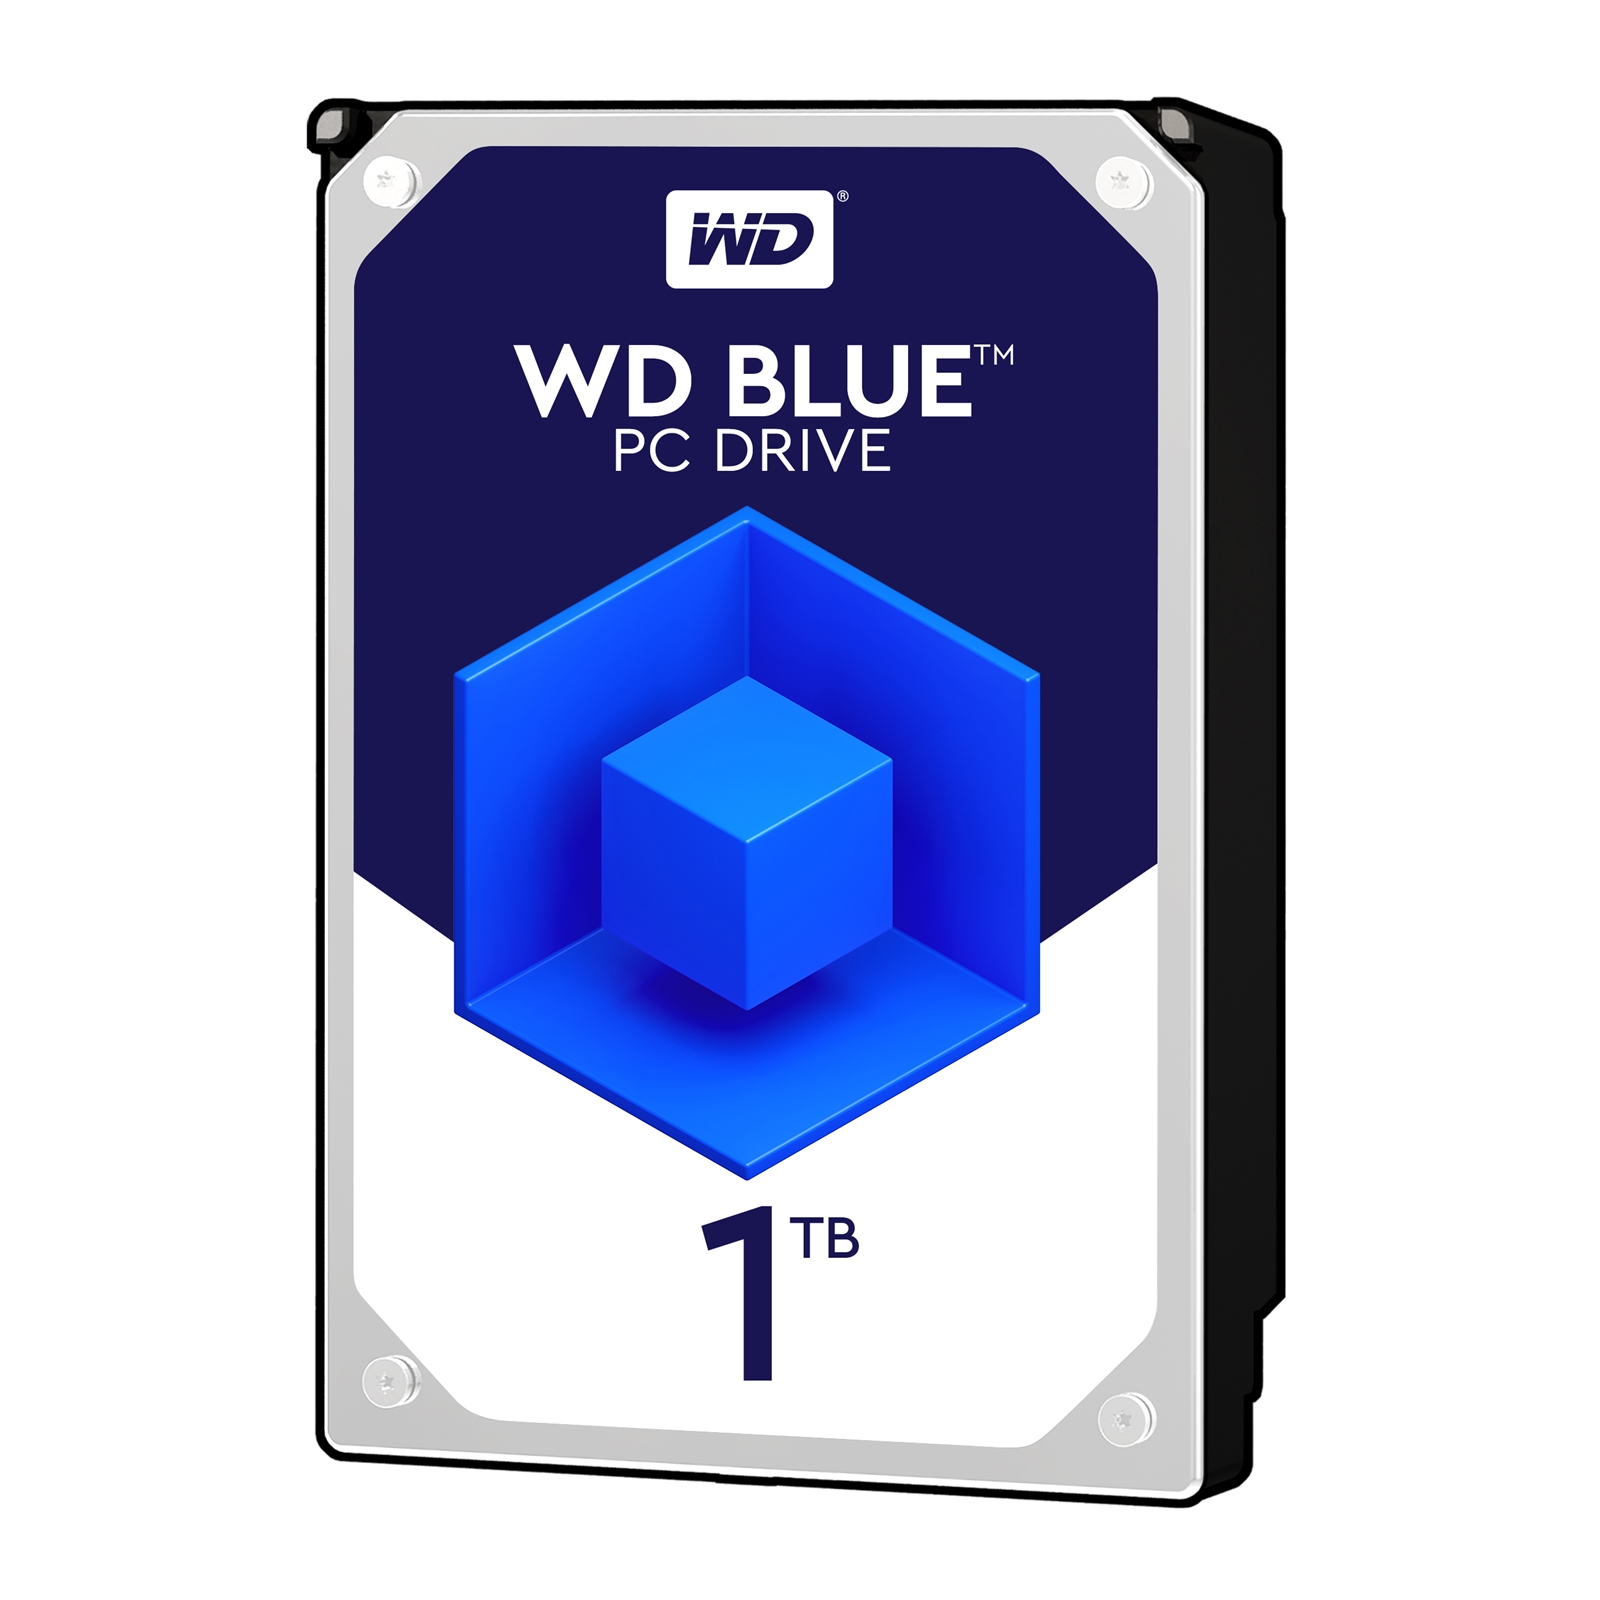 WD Blue 1TB 3.5'' 7200rpm 64mb Cache Sata III Internal Hard Drive